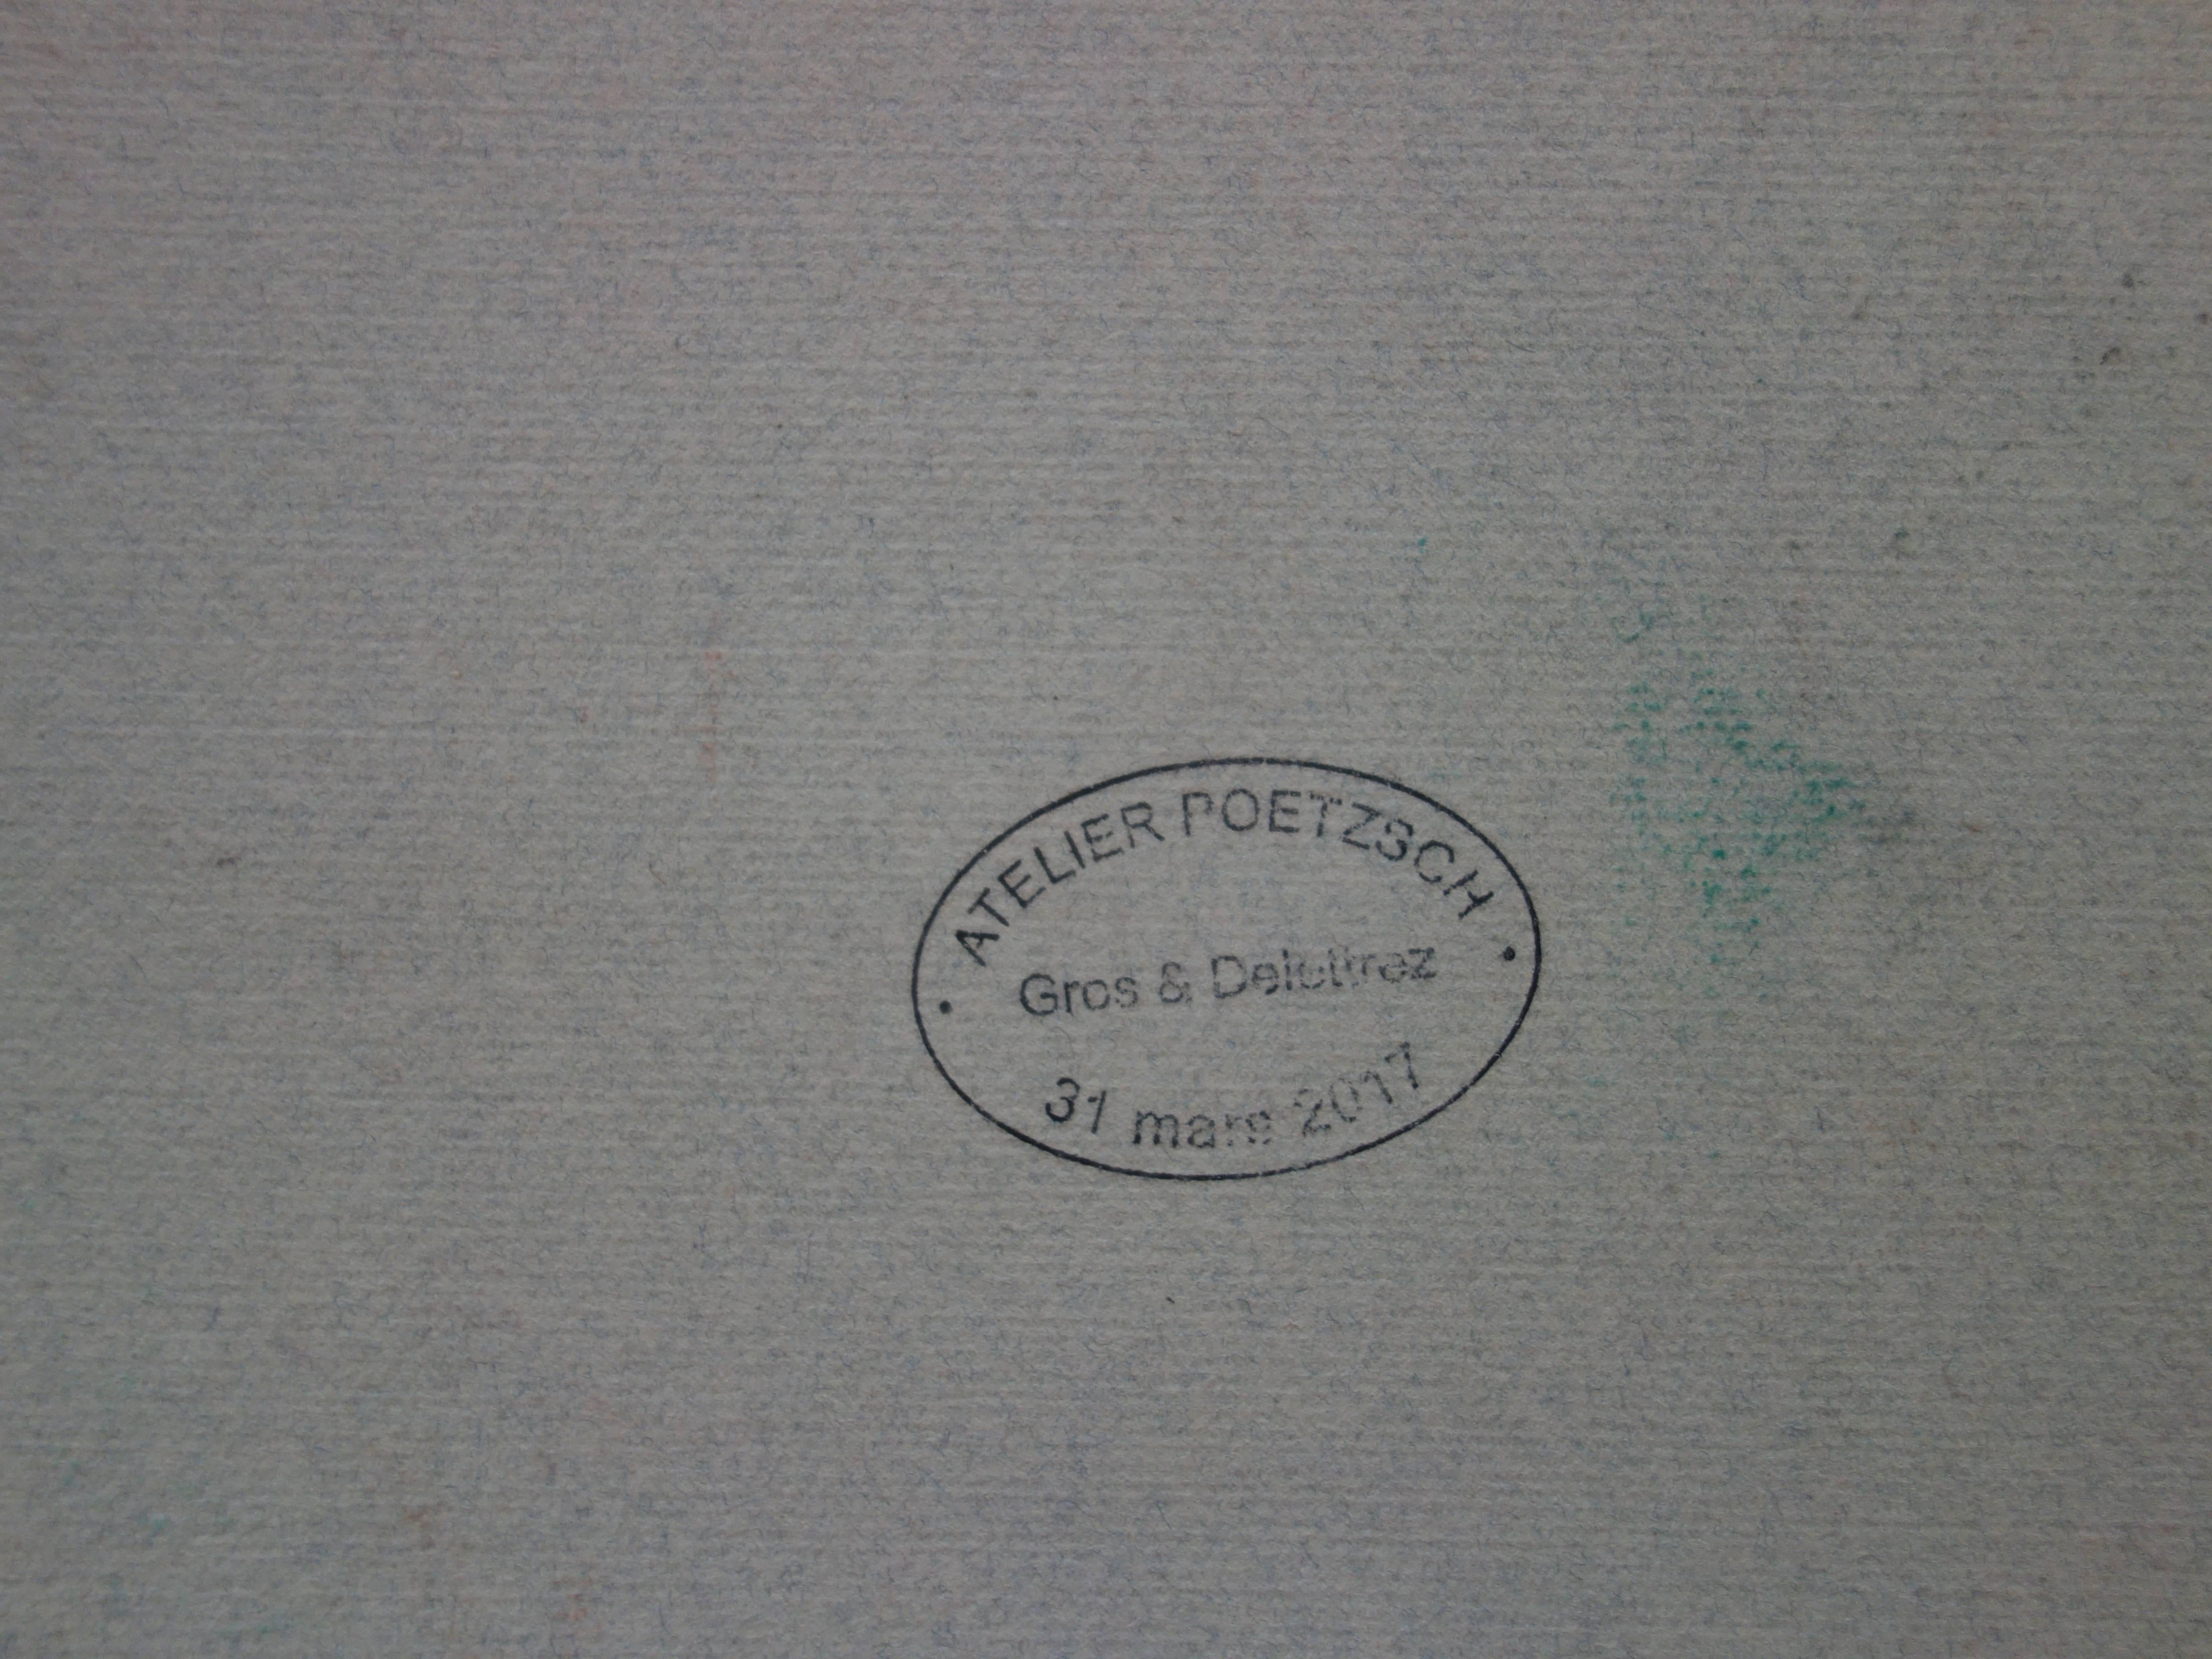 Gustave Poetzsch (1870-1950) 
Blauäugiger Junge

Originalzeichnung mit Holzkohle
Signiert unten rechts
auf Leinenpapier 37 x 31 cm (ca. 15 x 12 Zoll)
Stempel der Nachlassversteigerung auf der Rückseite

Sehr guter Zustand - Leichte Mängel am Rand